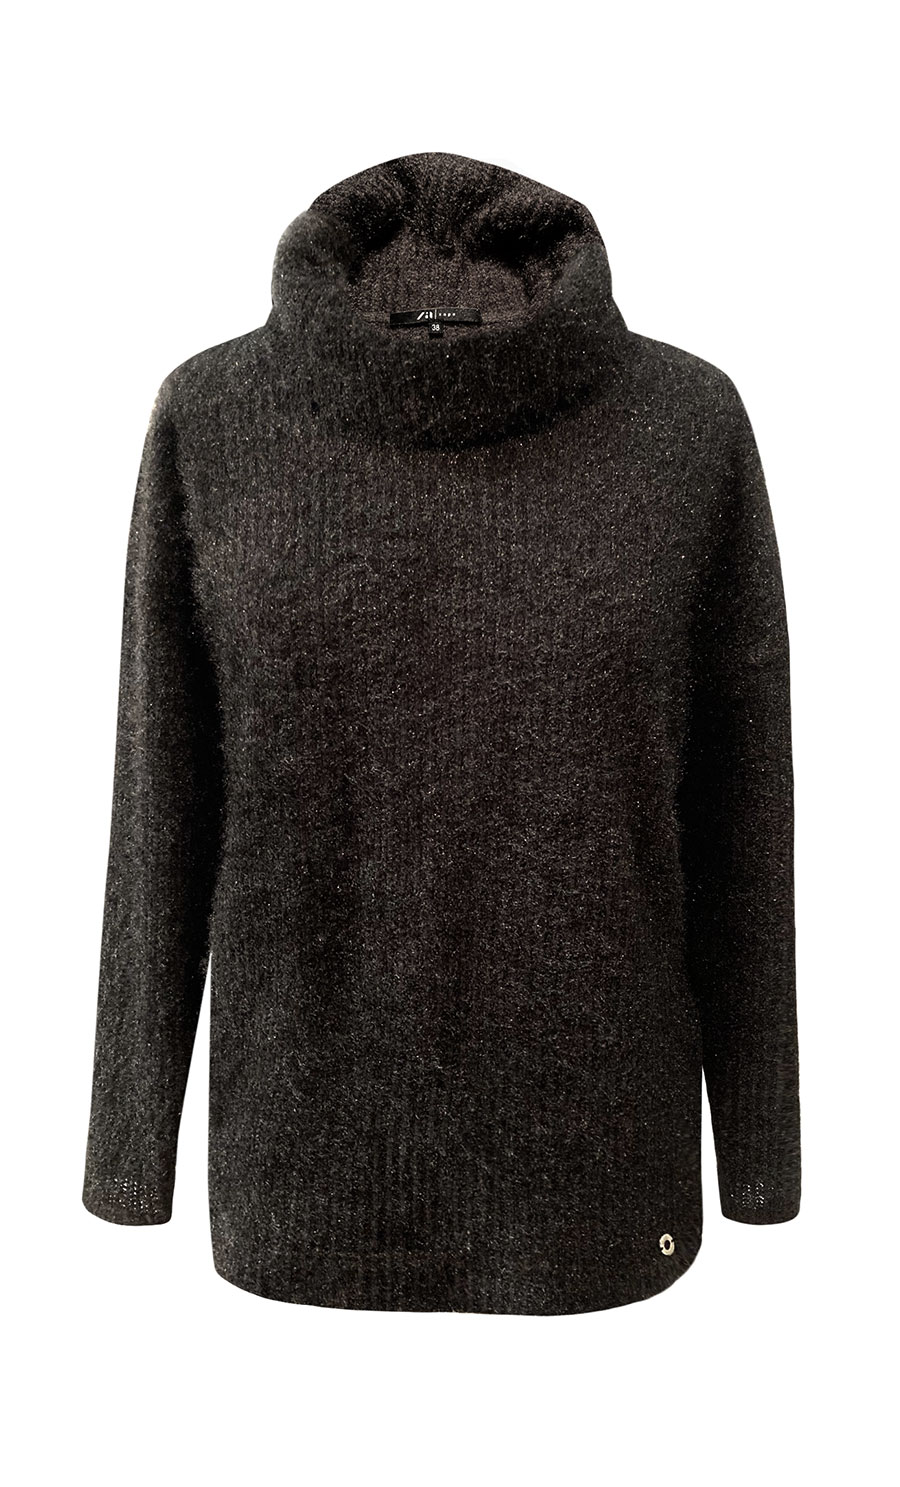 Zaps Woman's Sweater Melton